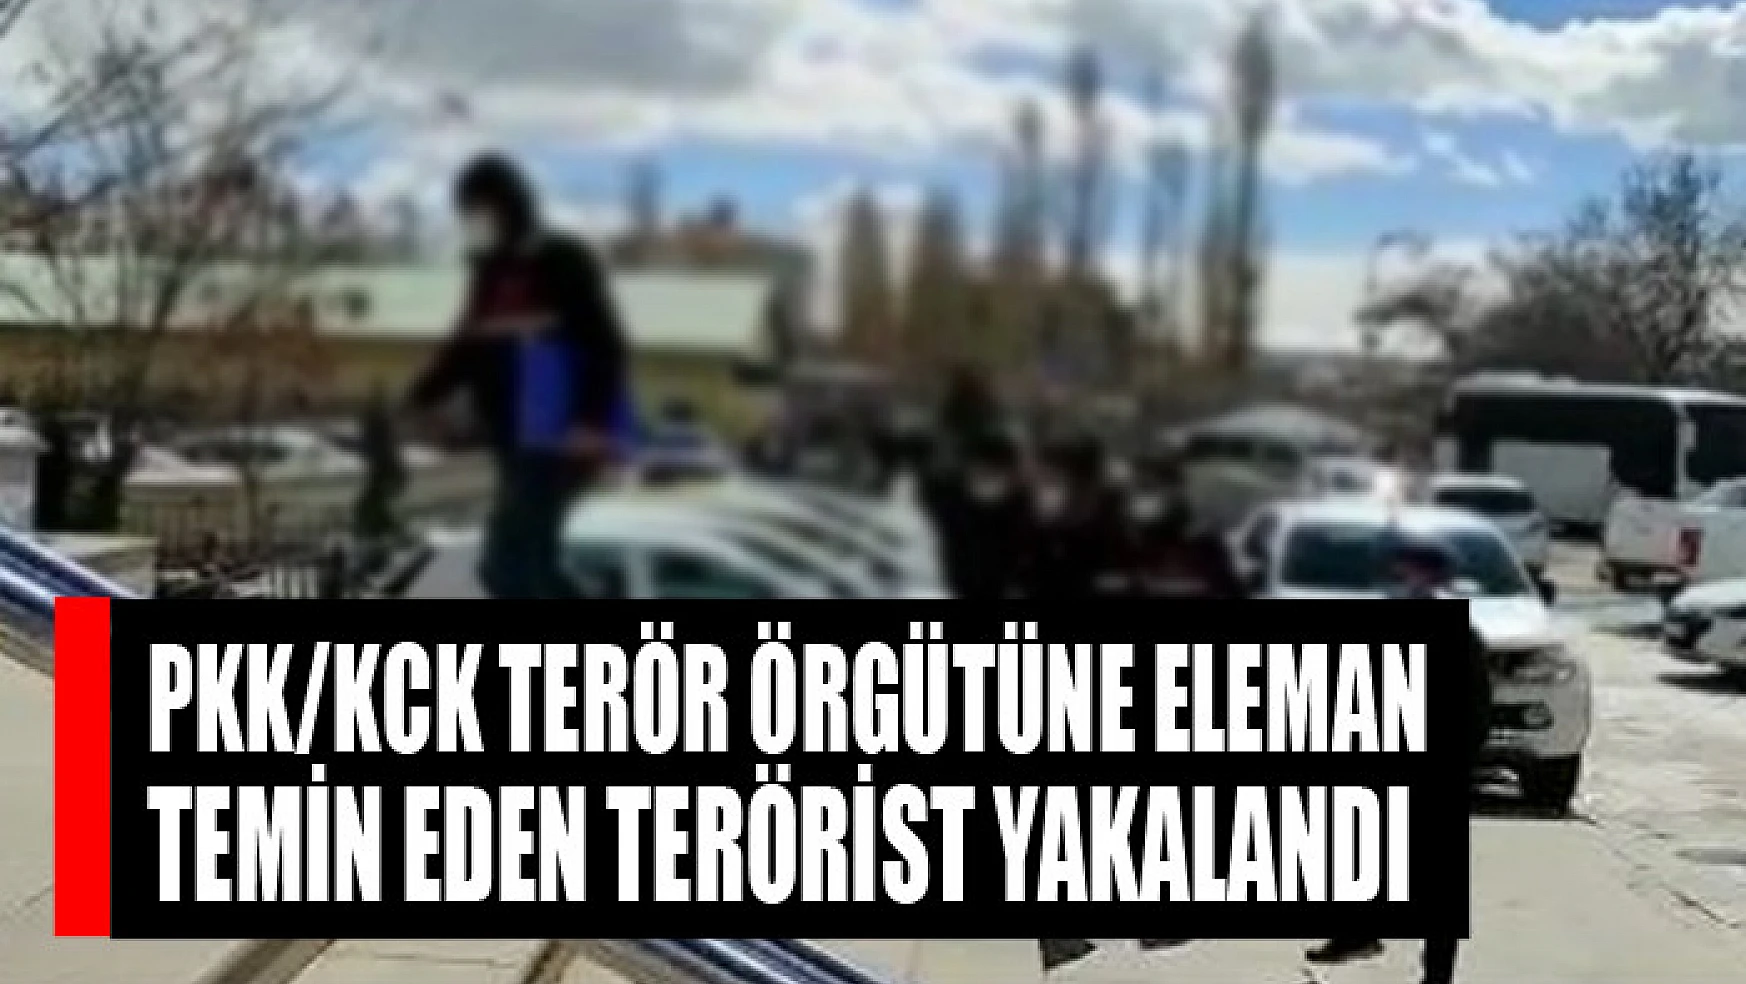 PKK/KCK terör örgütüne eleman temin eden terörist yakalandı